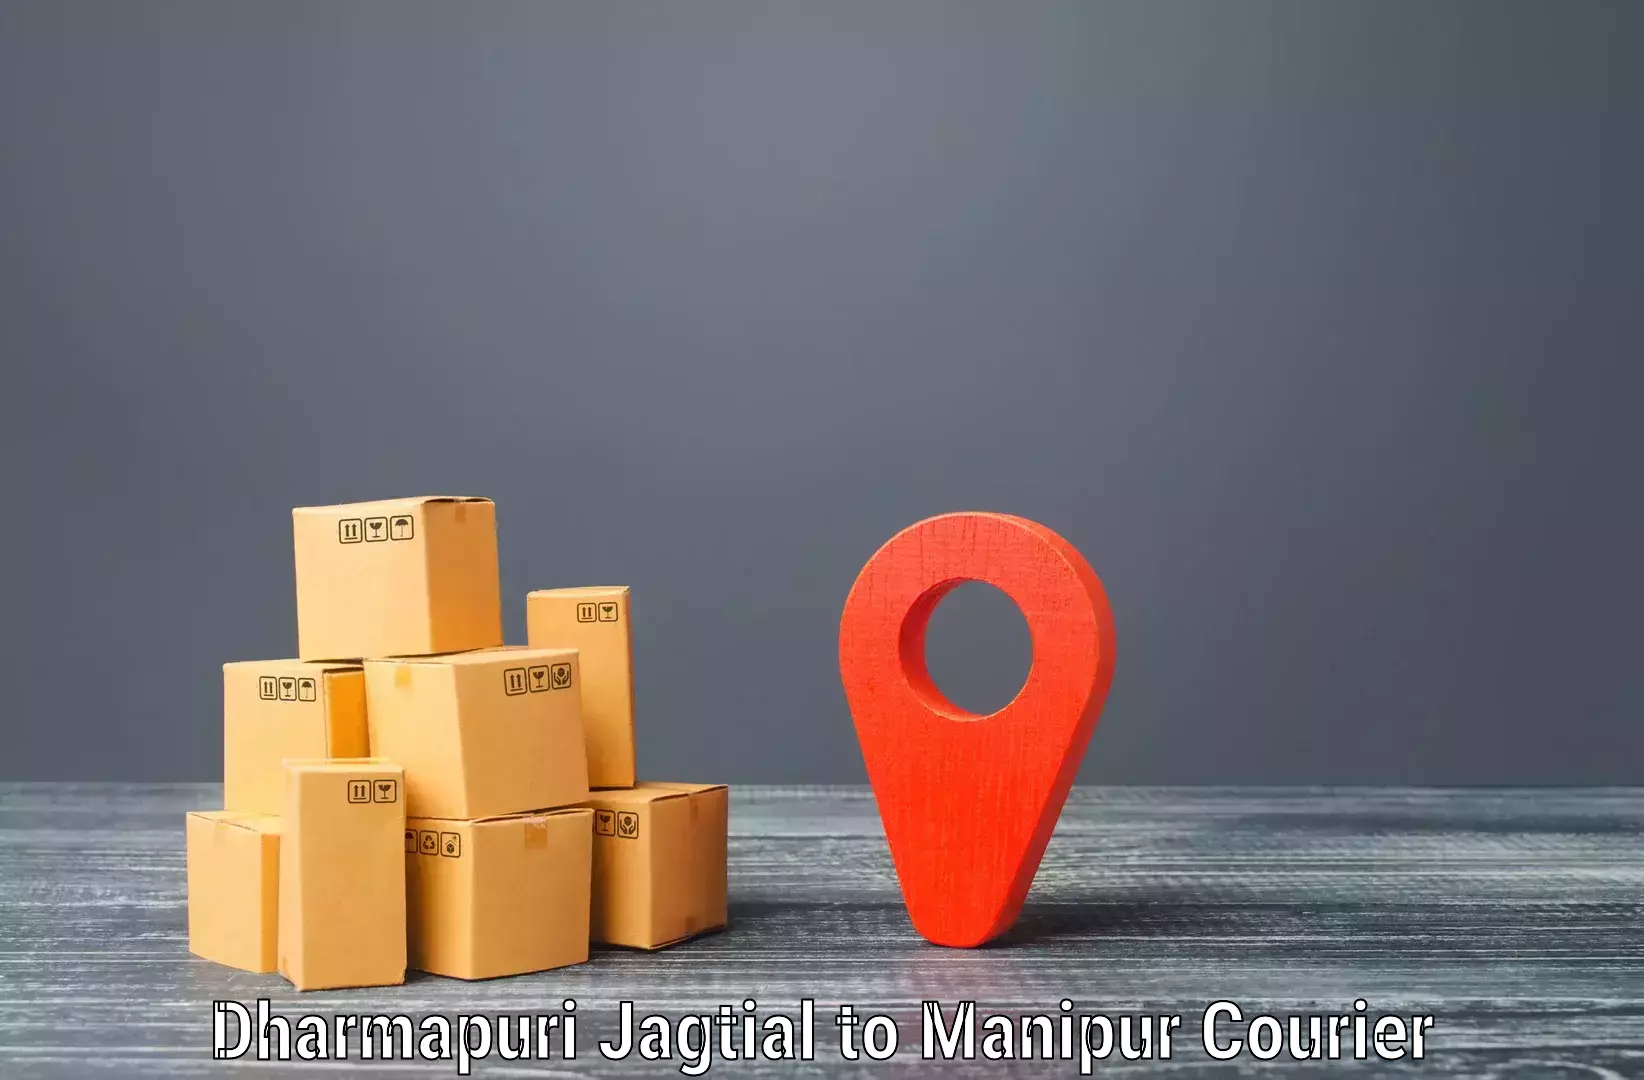 Express delivery network in Dharmapuri Jagtial to Jiribam